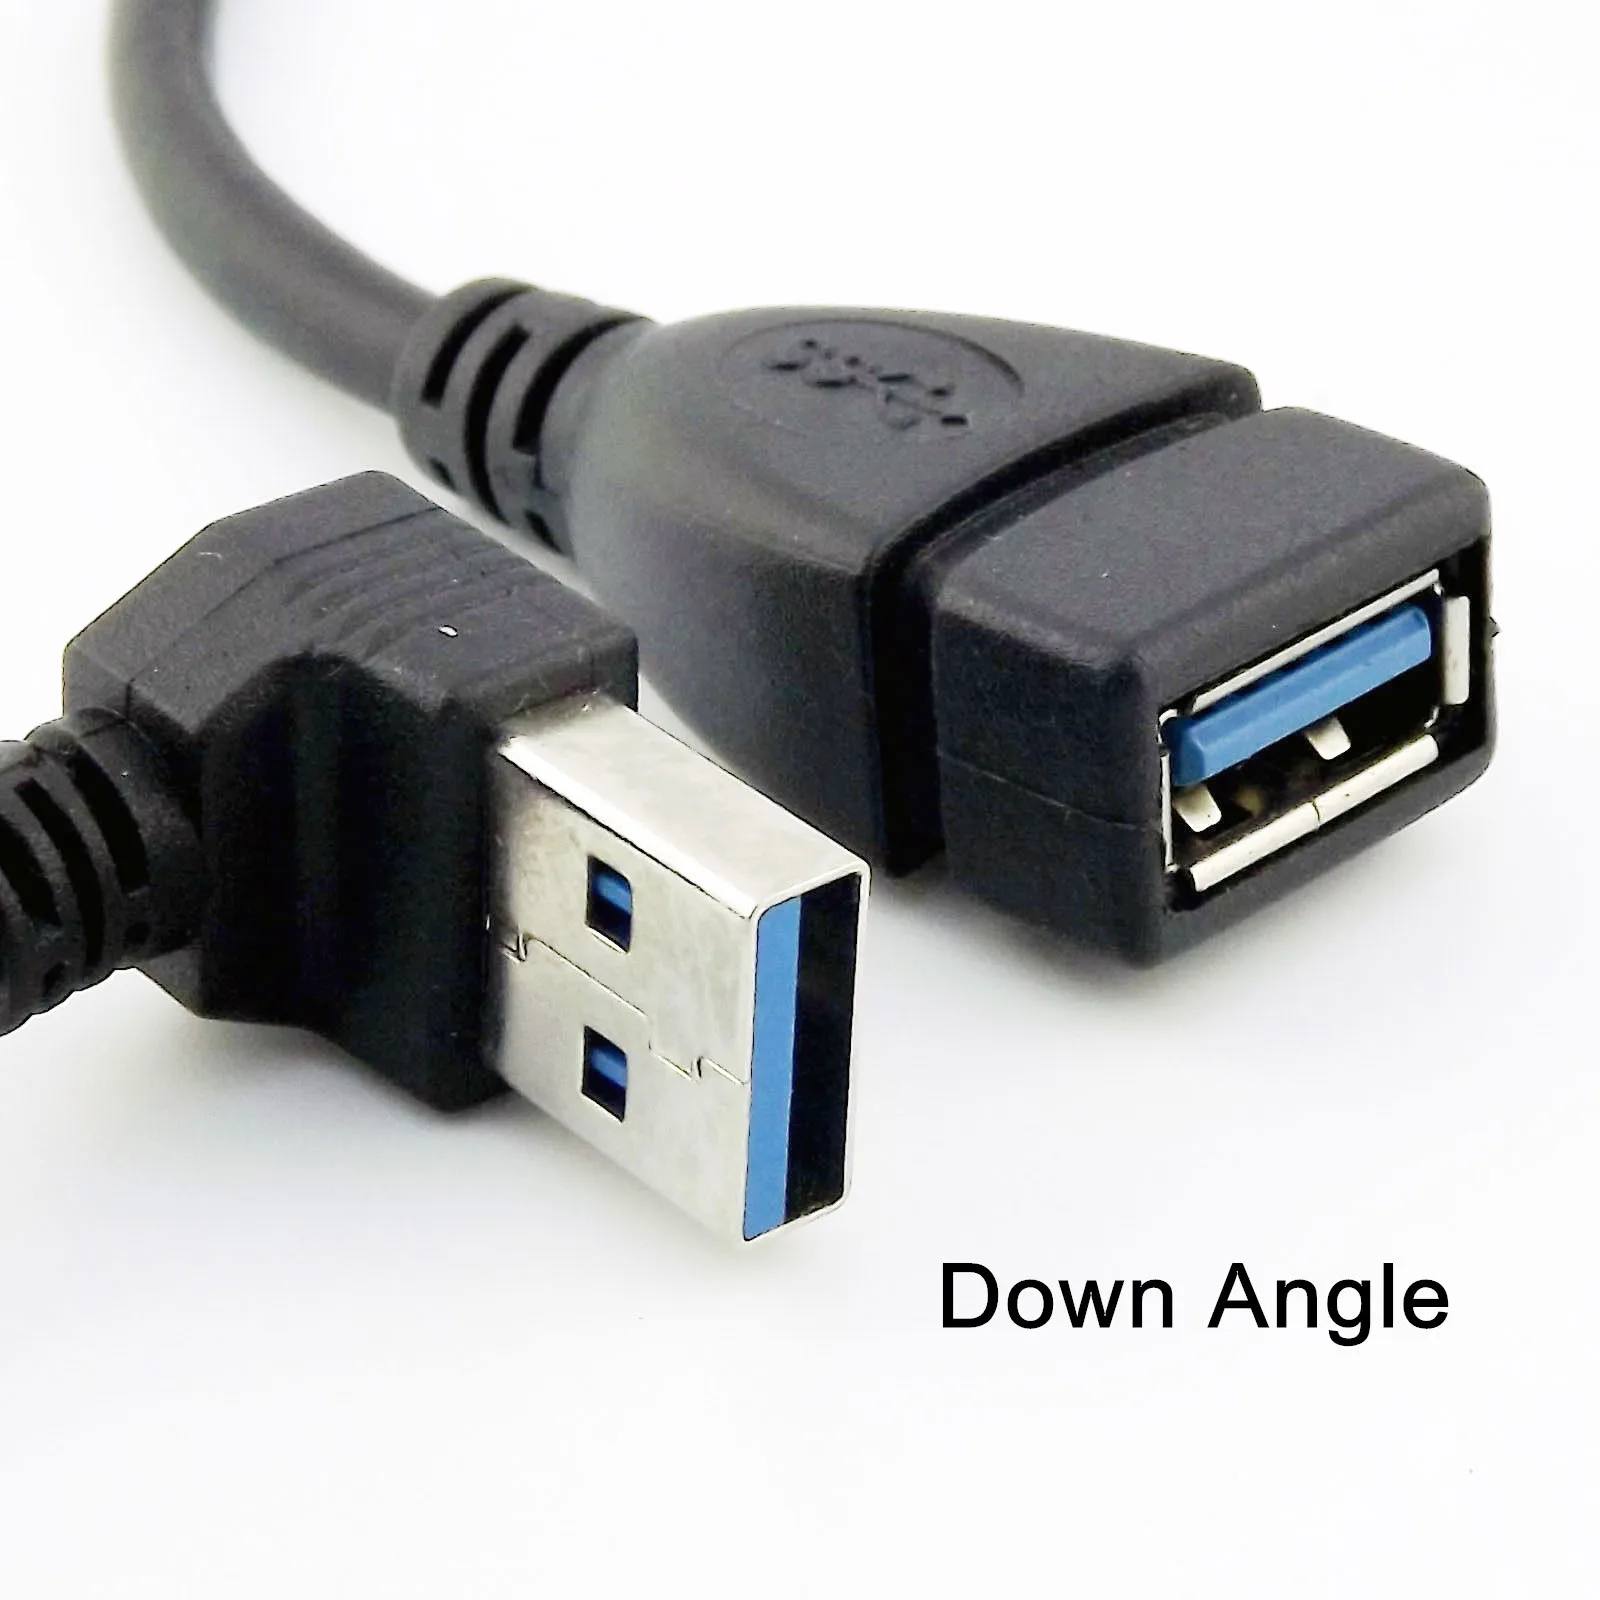 10x USB 3,0 Тип женщина к USB 3,0 штекер удлинитель Кабель переходника вверх/вниз/левый/правый угол - Цвет: Down Angle